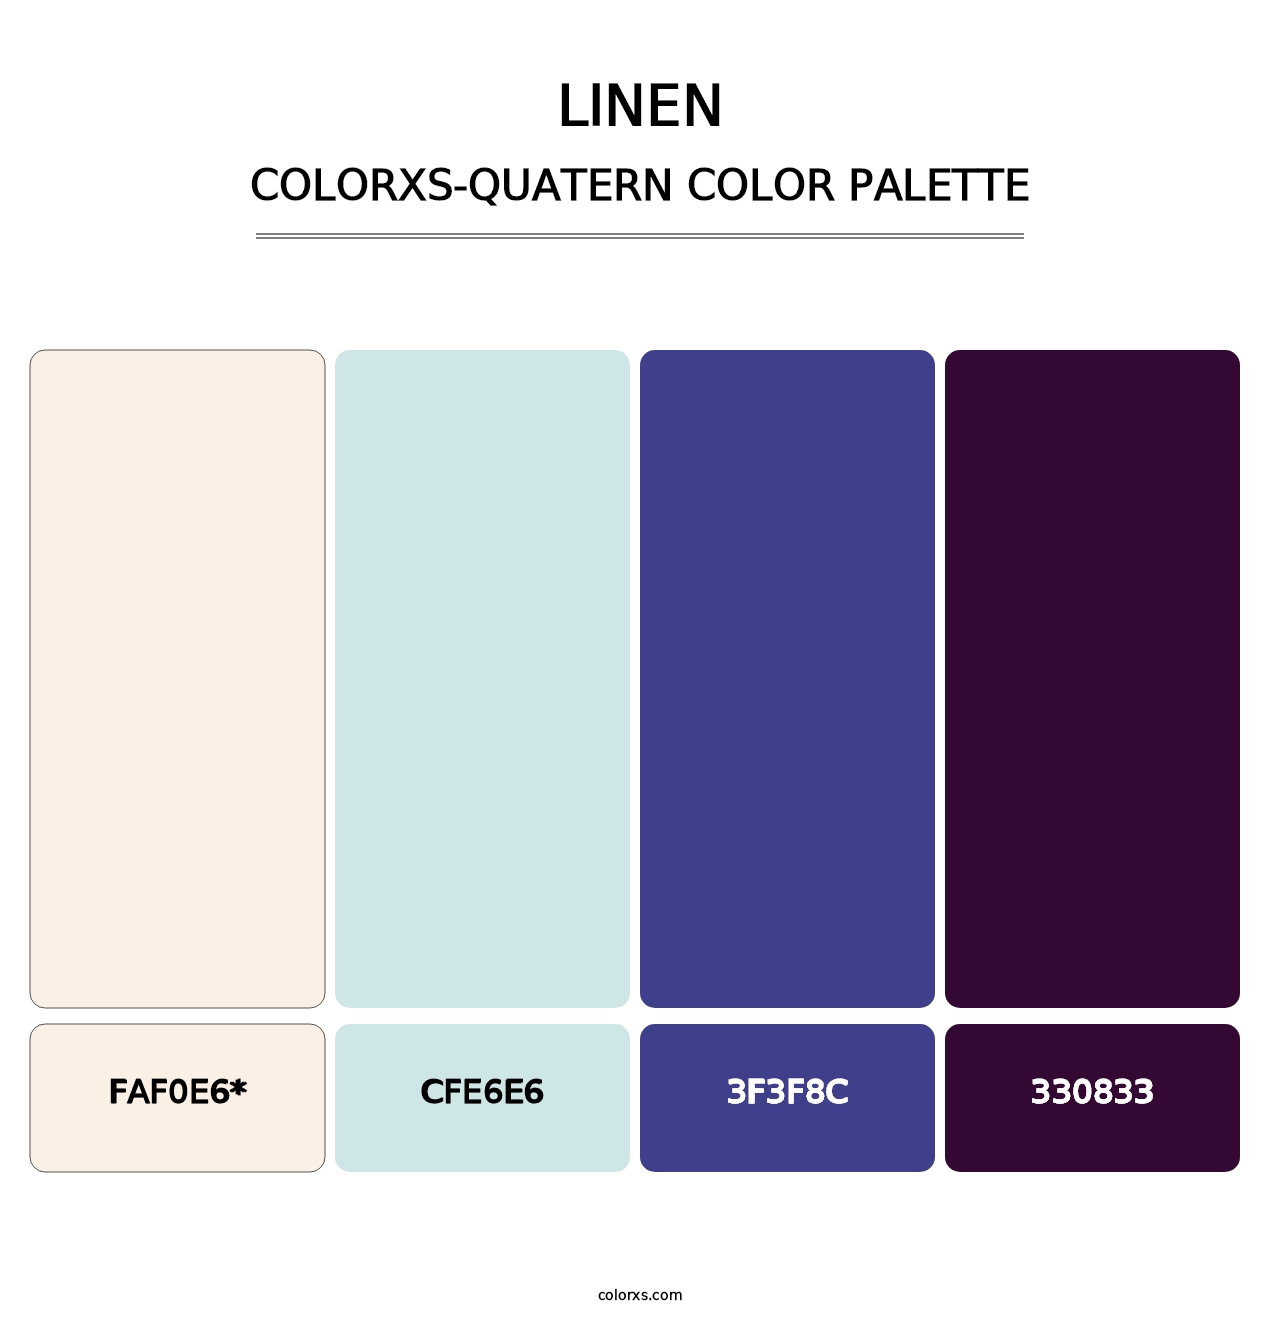 Linen - Colorxs Quatern Palette